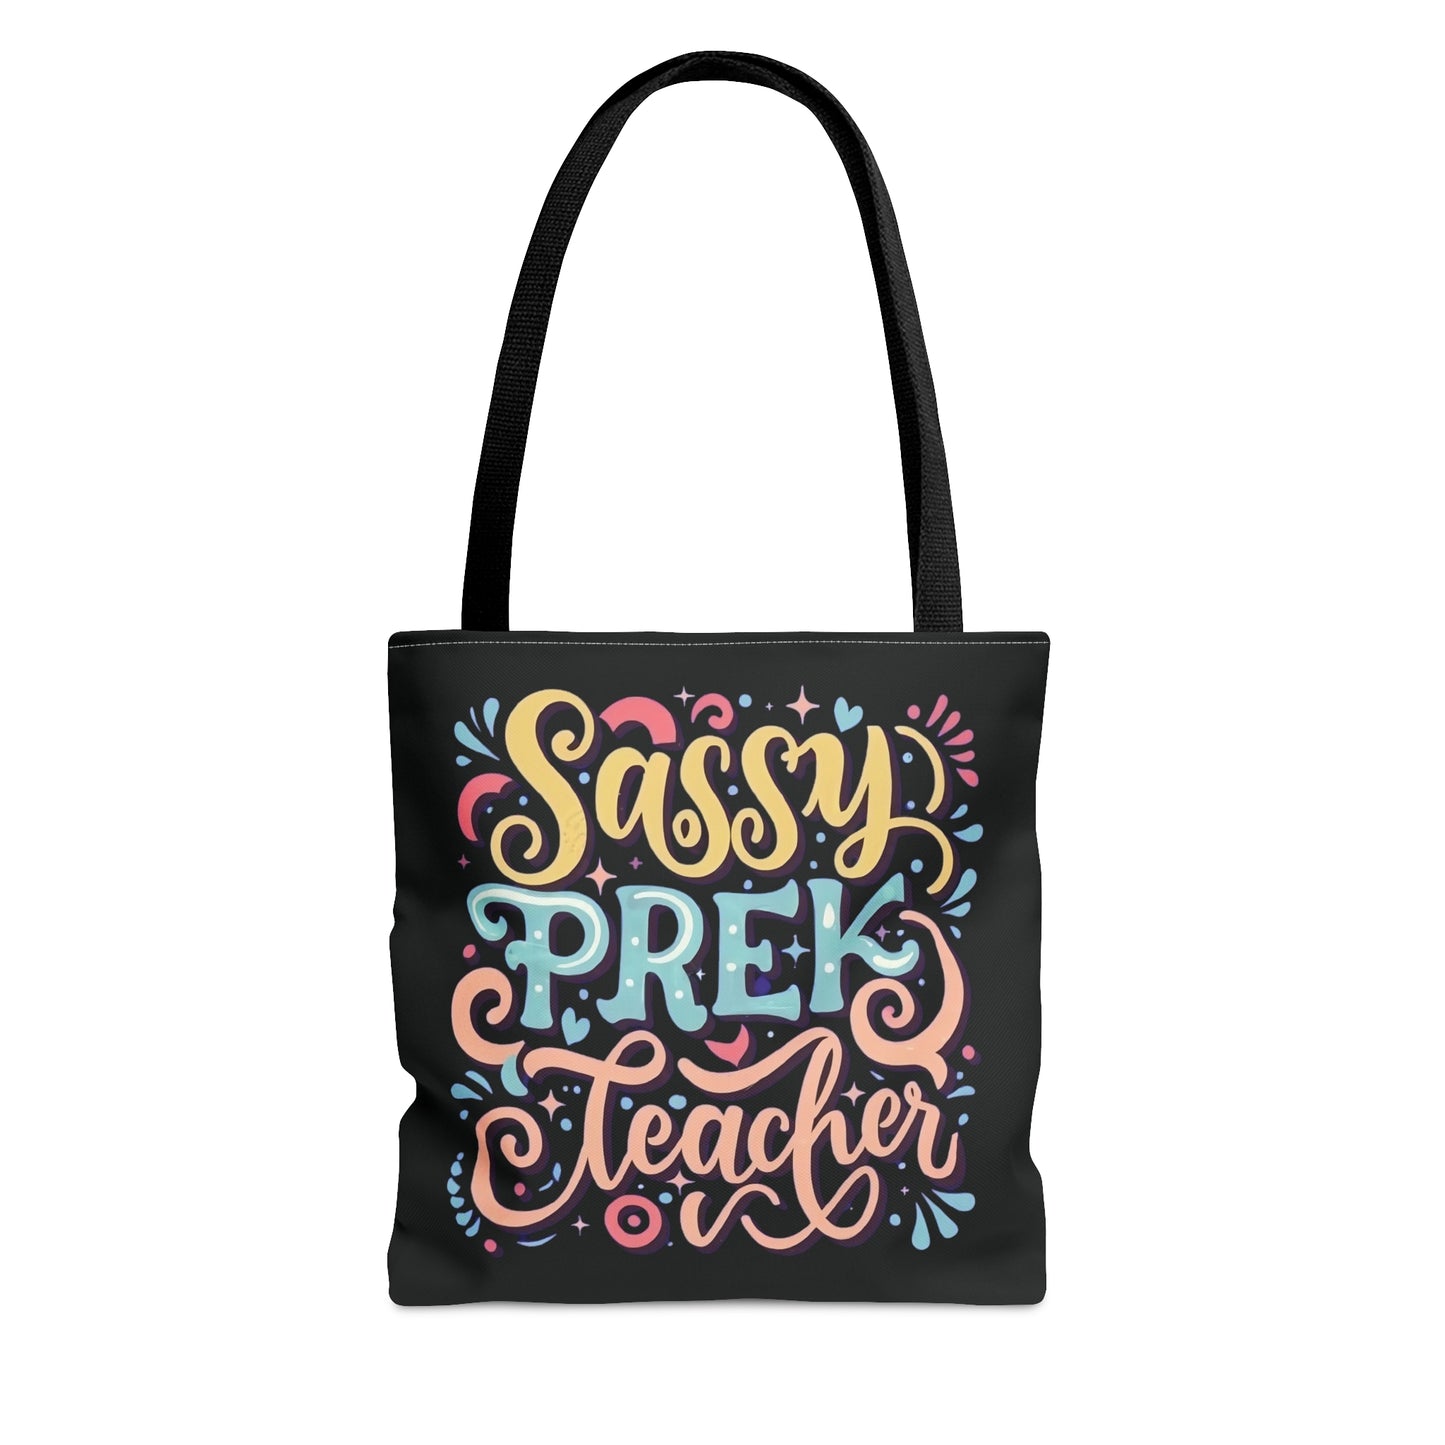 PreK Teacher Tote Bag -"Sassy PreK Teacher"